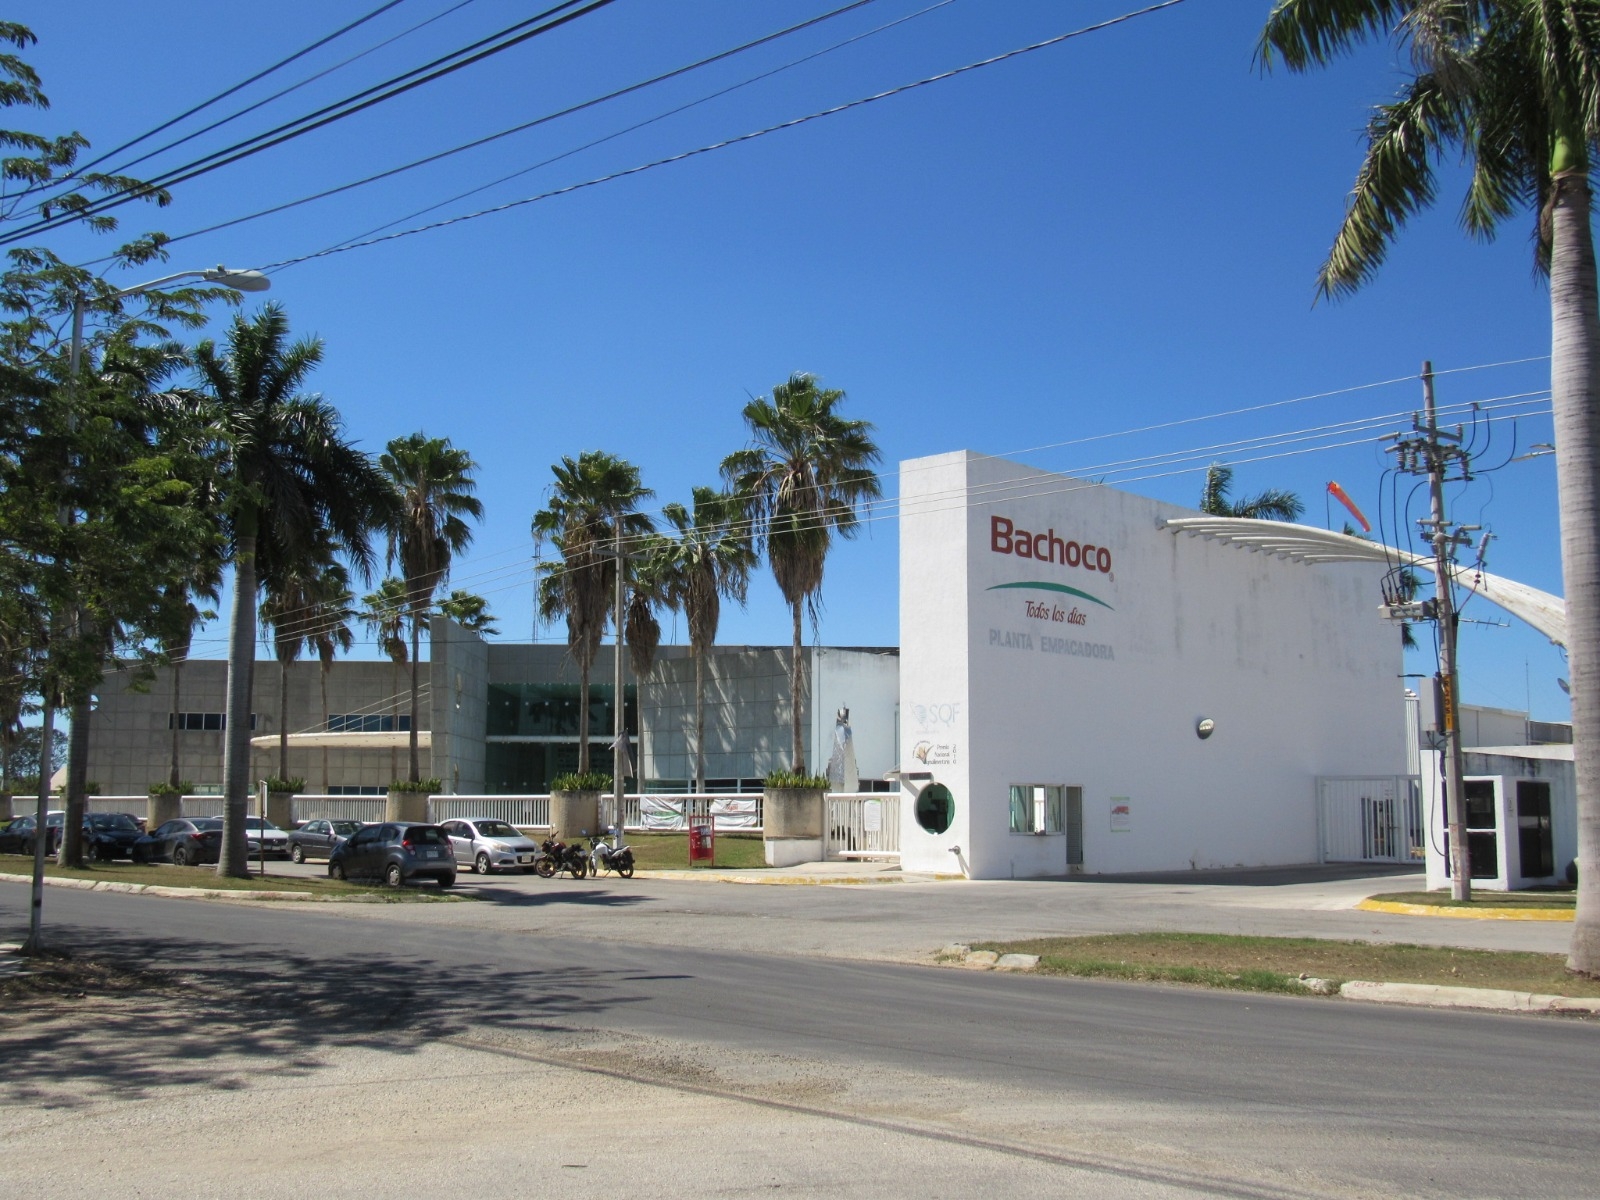 Científicos responsabilizan al Ayuntamiento de Mérida por fuga de gas amoniaco en Bachoco